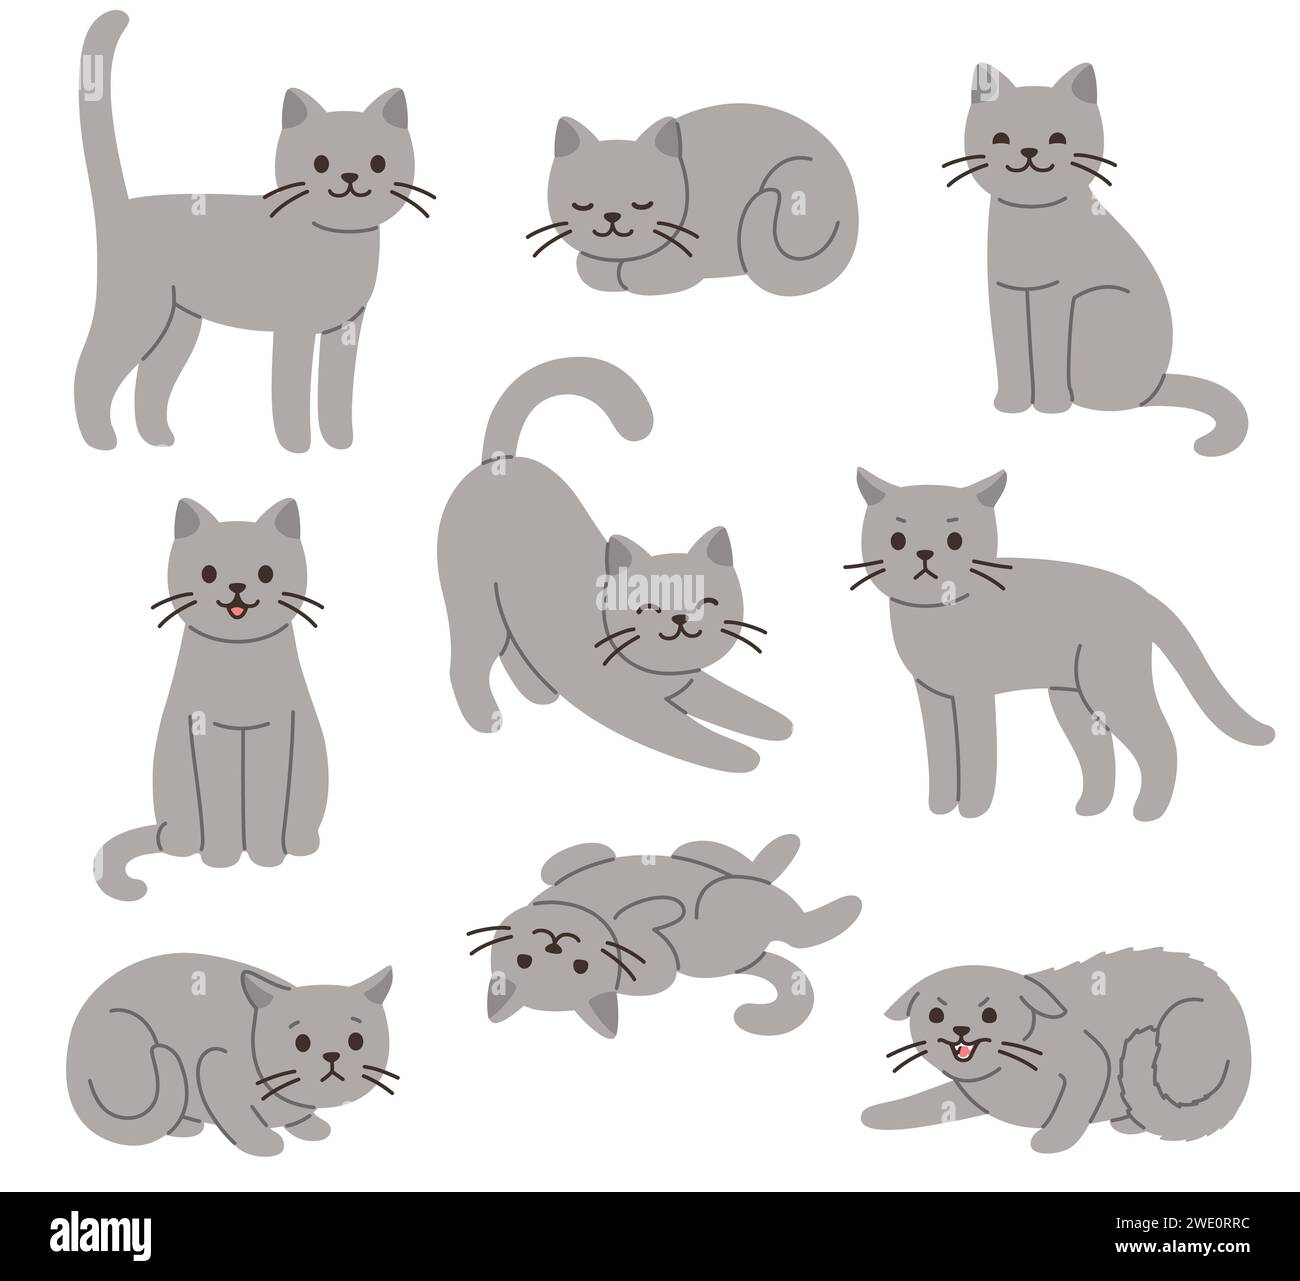 Zeichentrickkatzen-Set mit verschiedenen Posen und Emotionen. Katzenverhalten, Körpersprache und Gesichtsausdrücke. Einfache niedliche flache Vektor-Stil-Illustration. Stock Vektor